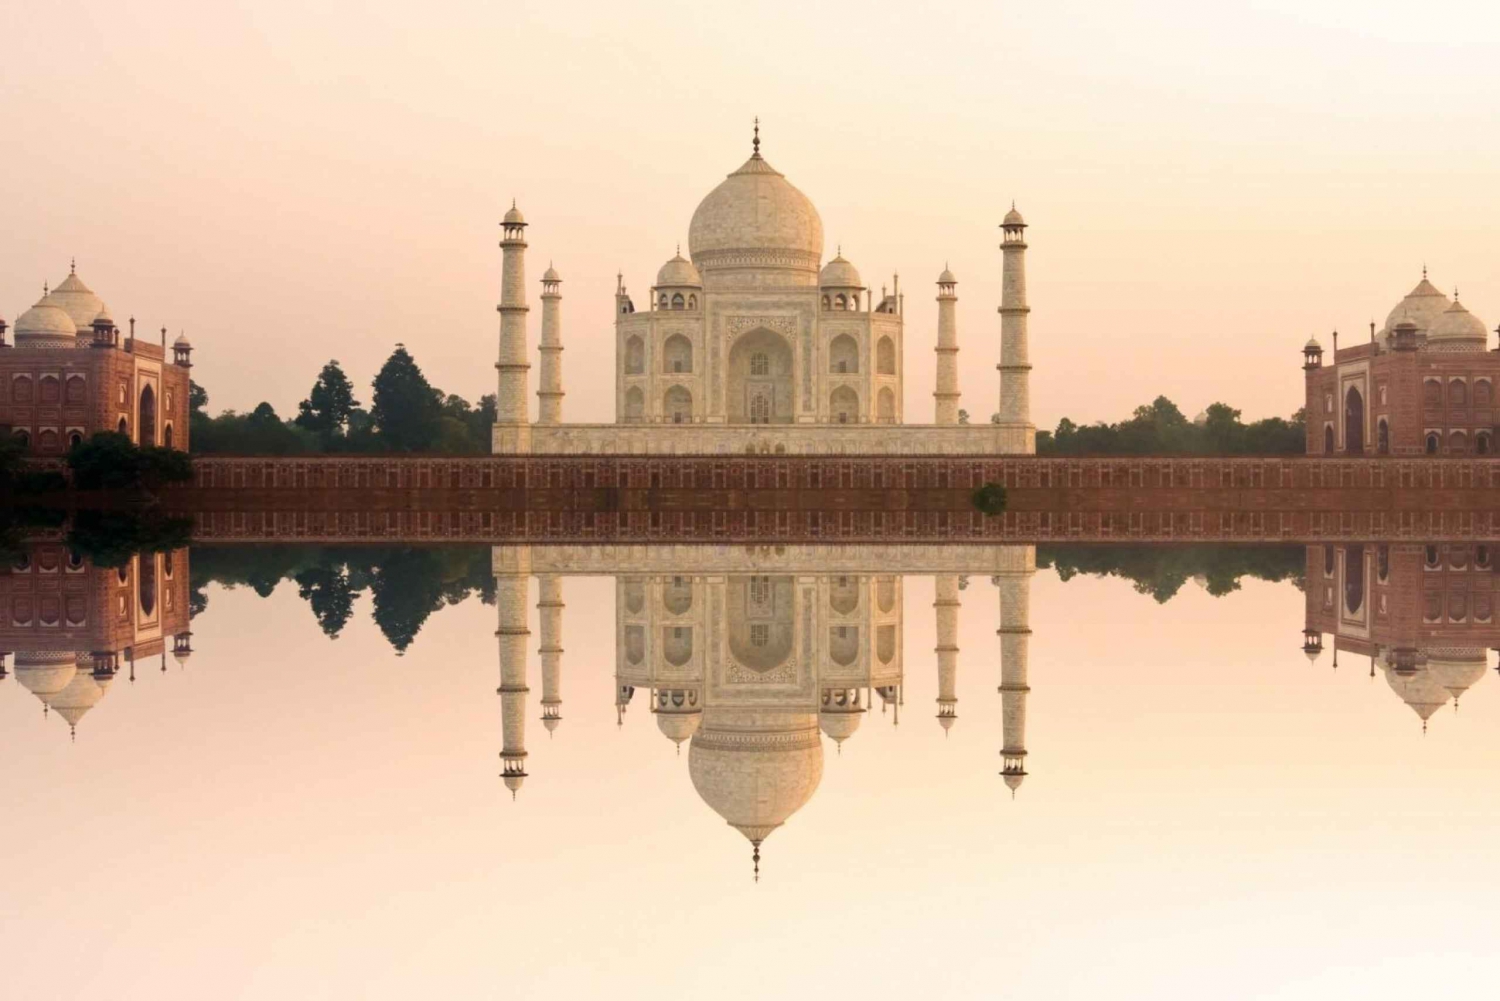 Jaipurista: Taj Mahal Sunrise Tour from Jaipur: Taj Mahal Sunrise Tour from Jaipur